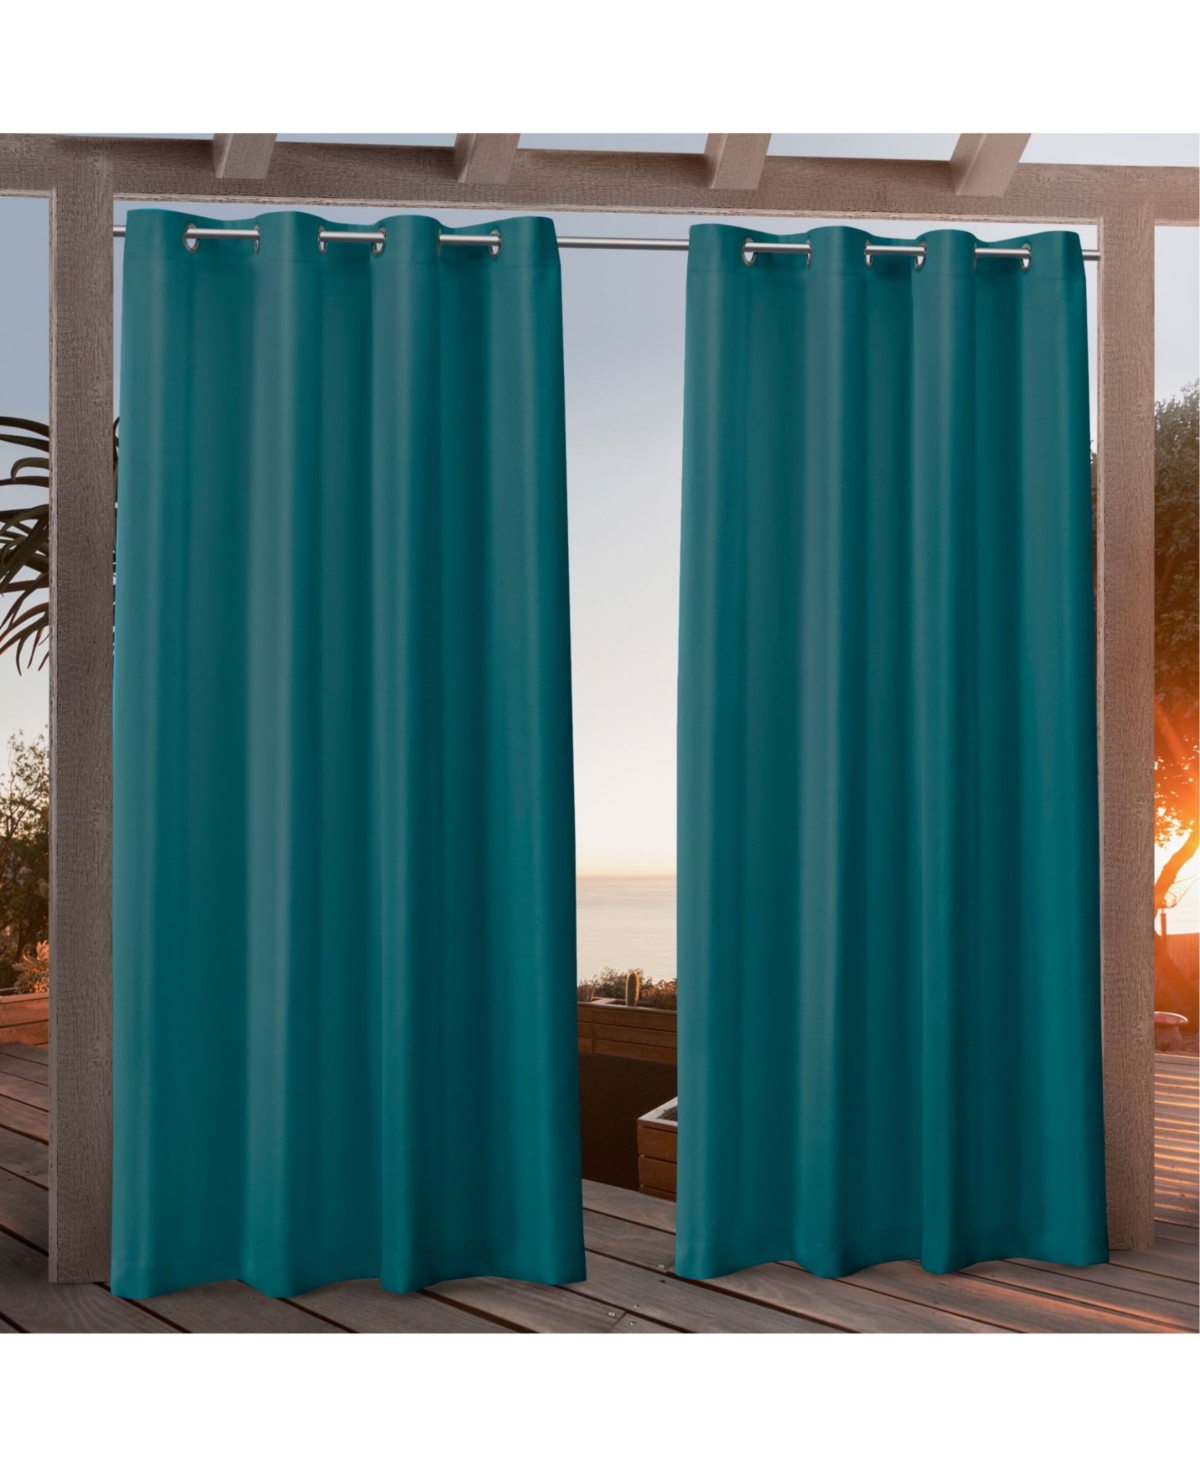 Canvas Indoor/Outdoor Grommet Top 54" X 84" Curtain Panel Pair - Teal